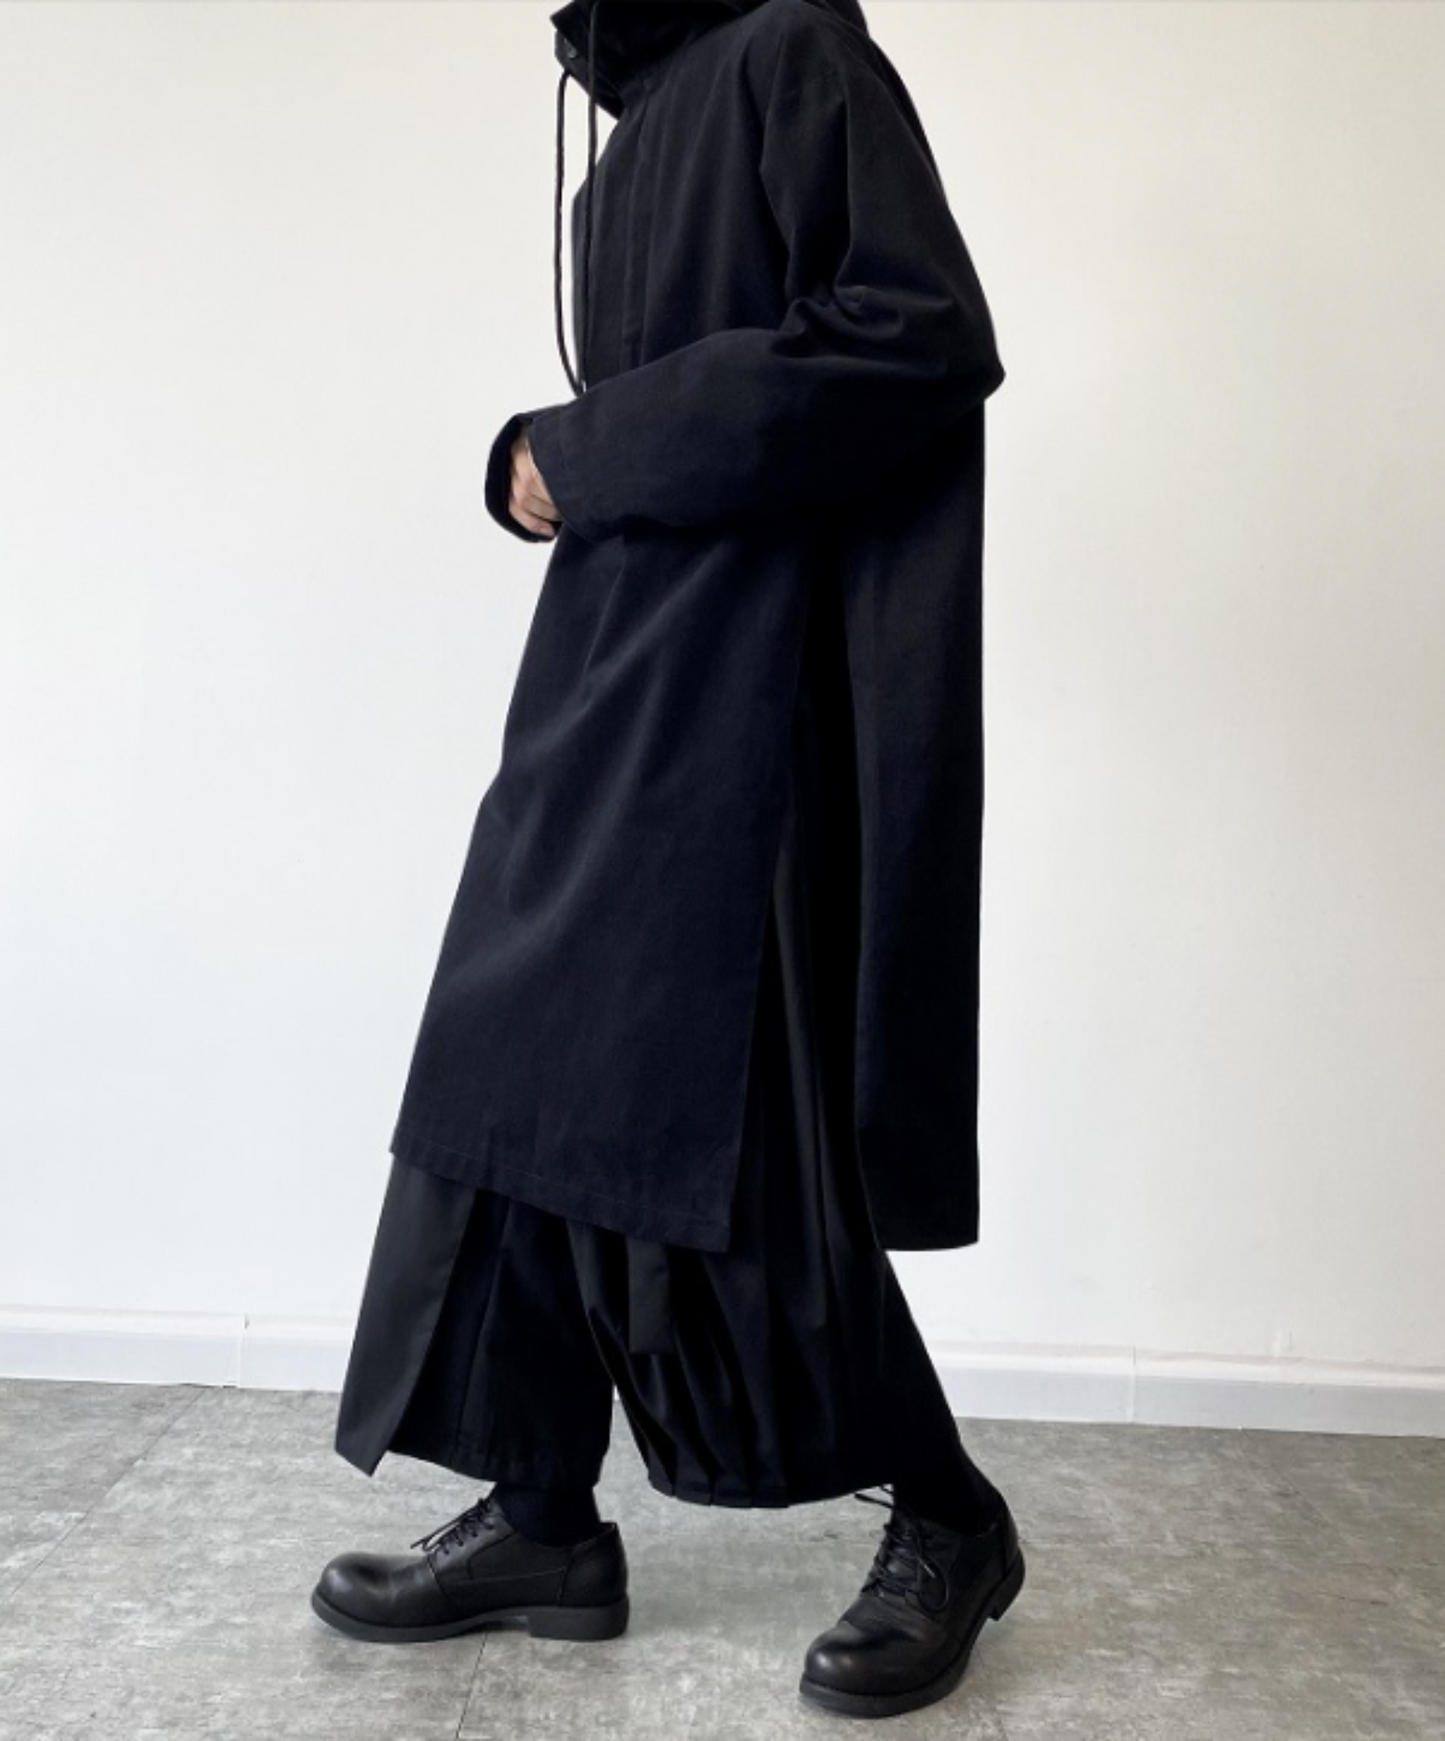 【style4】dark mode outfit set EN760（hoodie + pants Set）